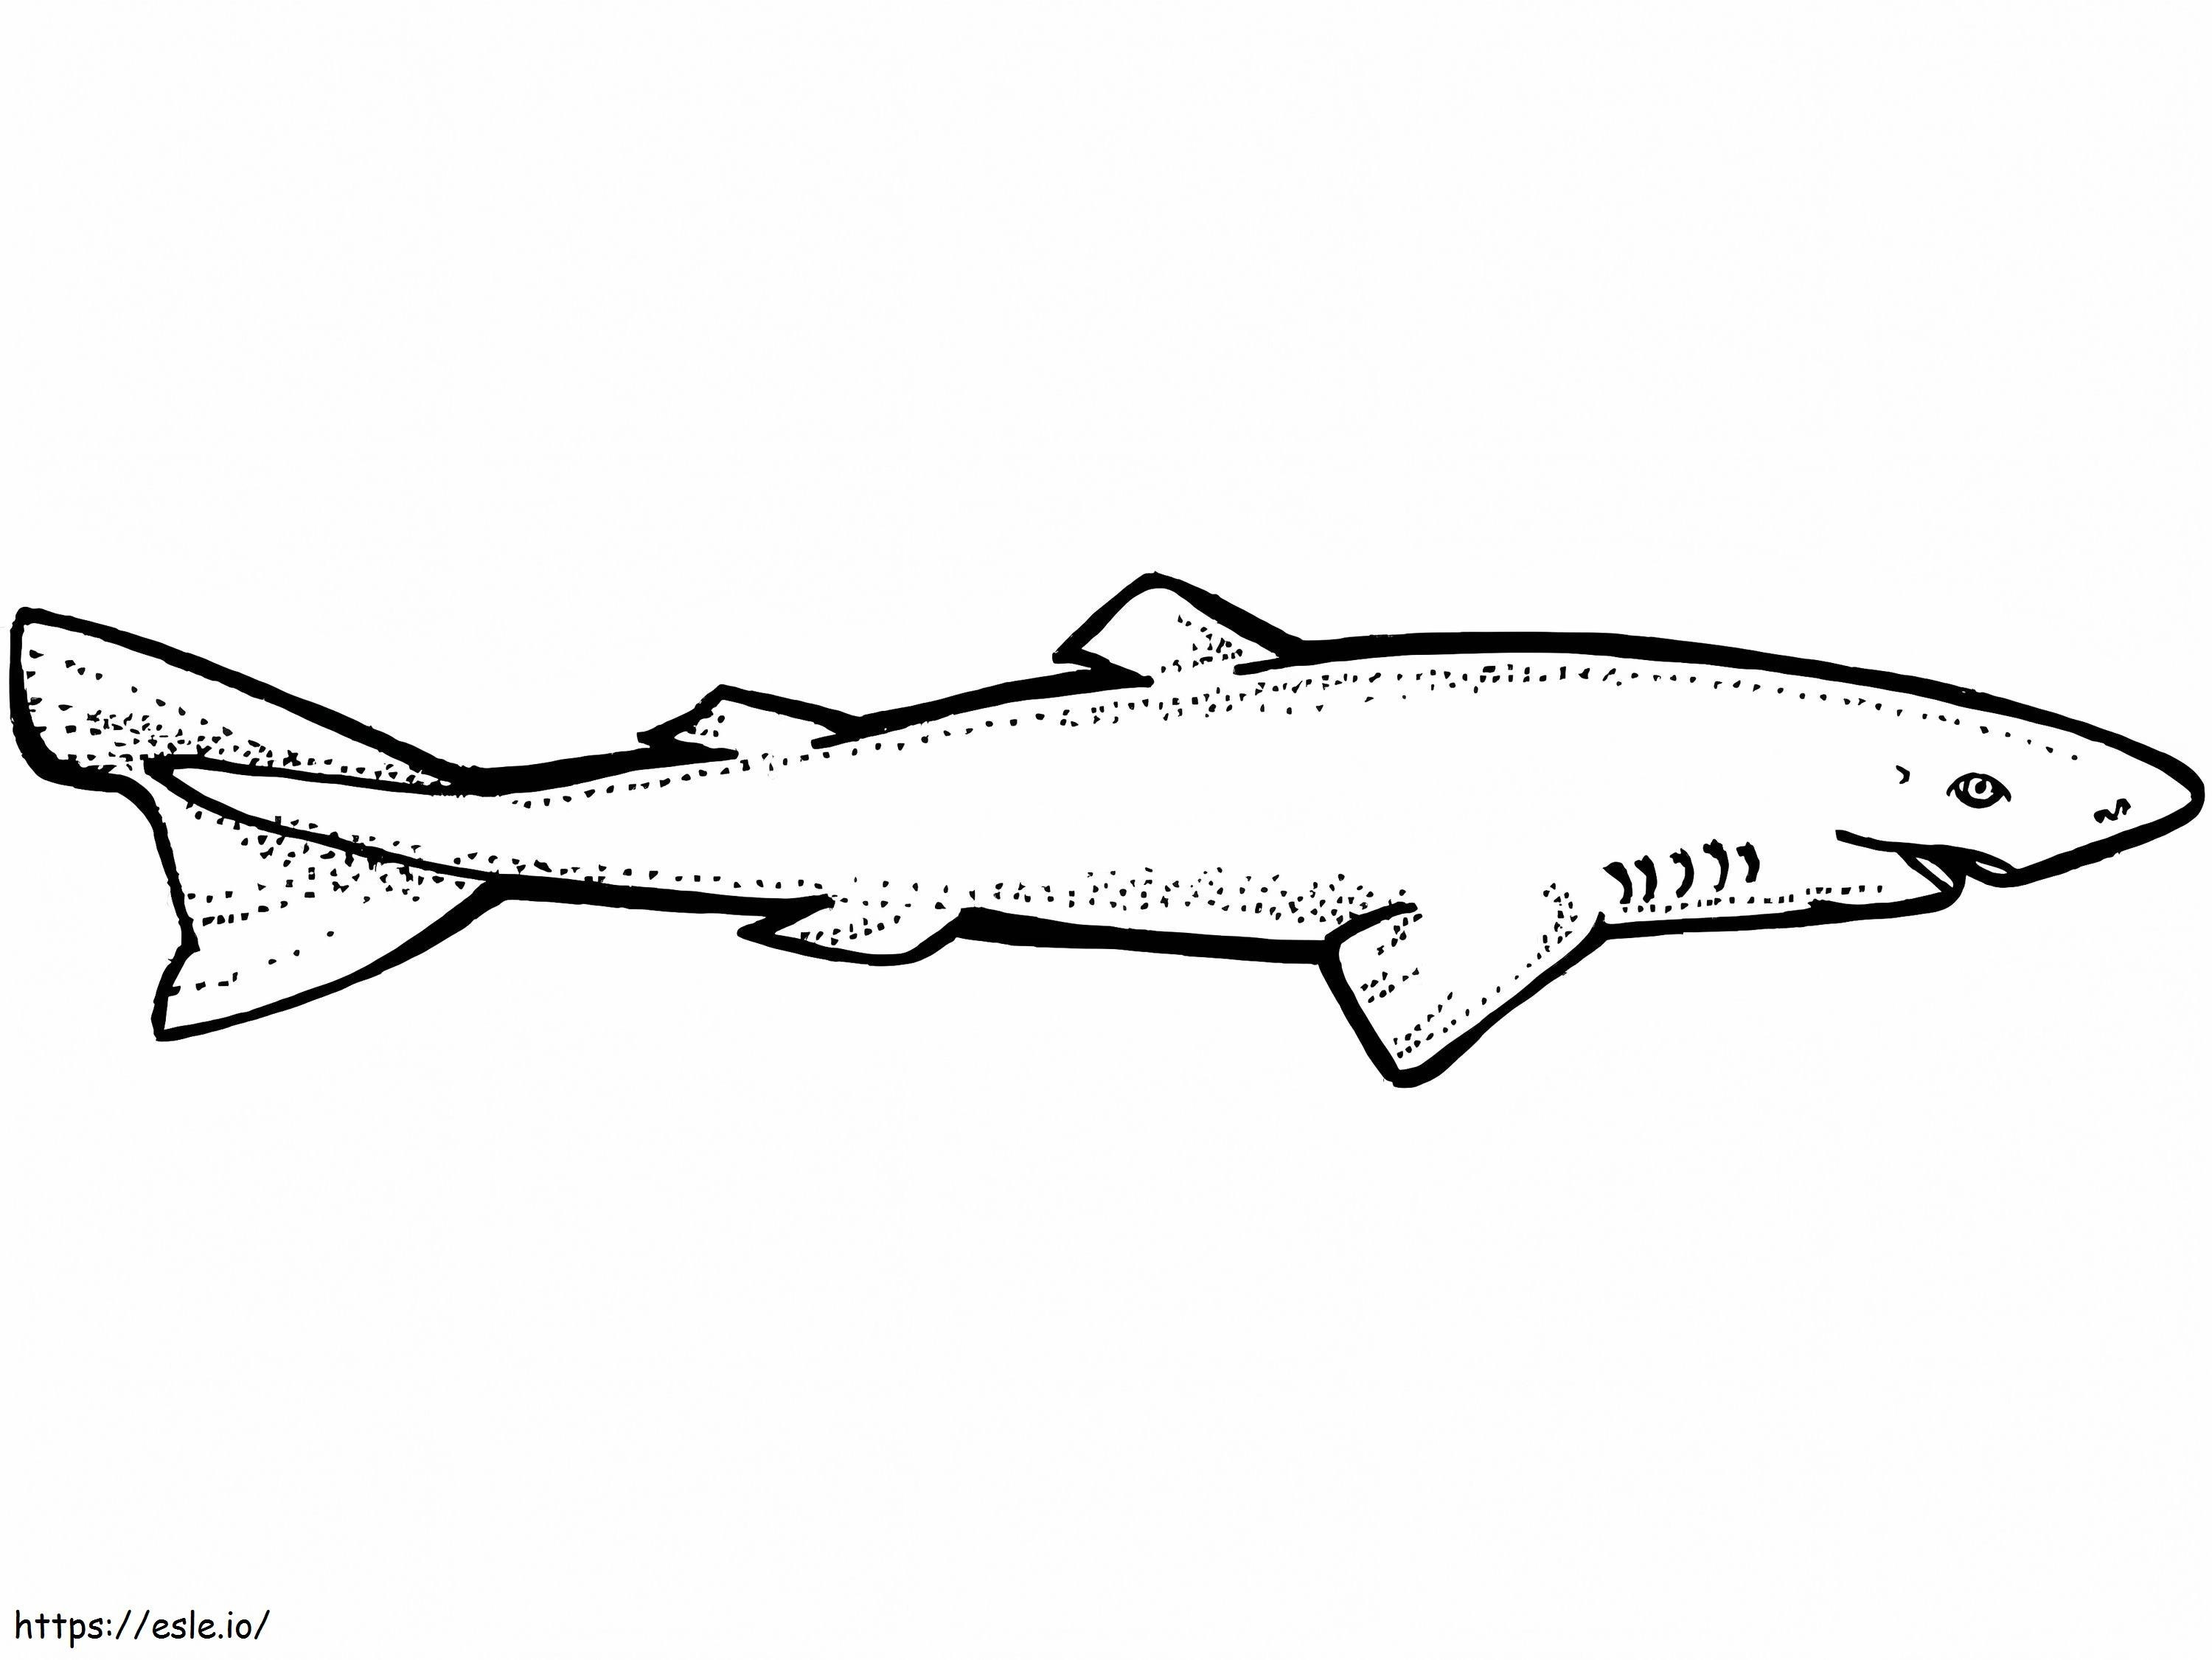 Grönland Köpek Balığı boyama